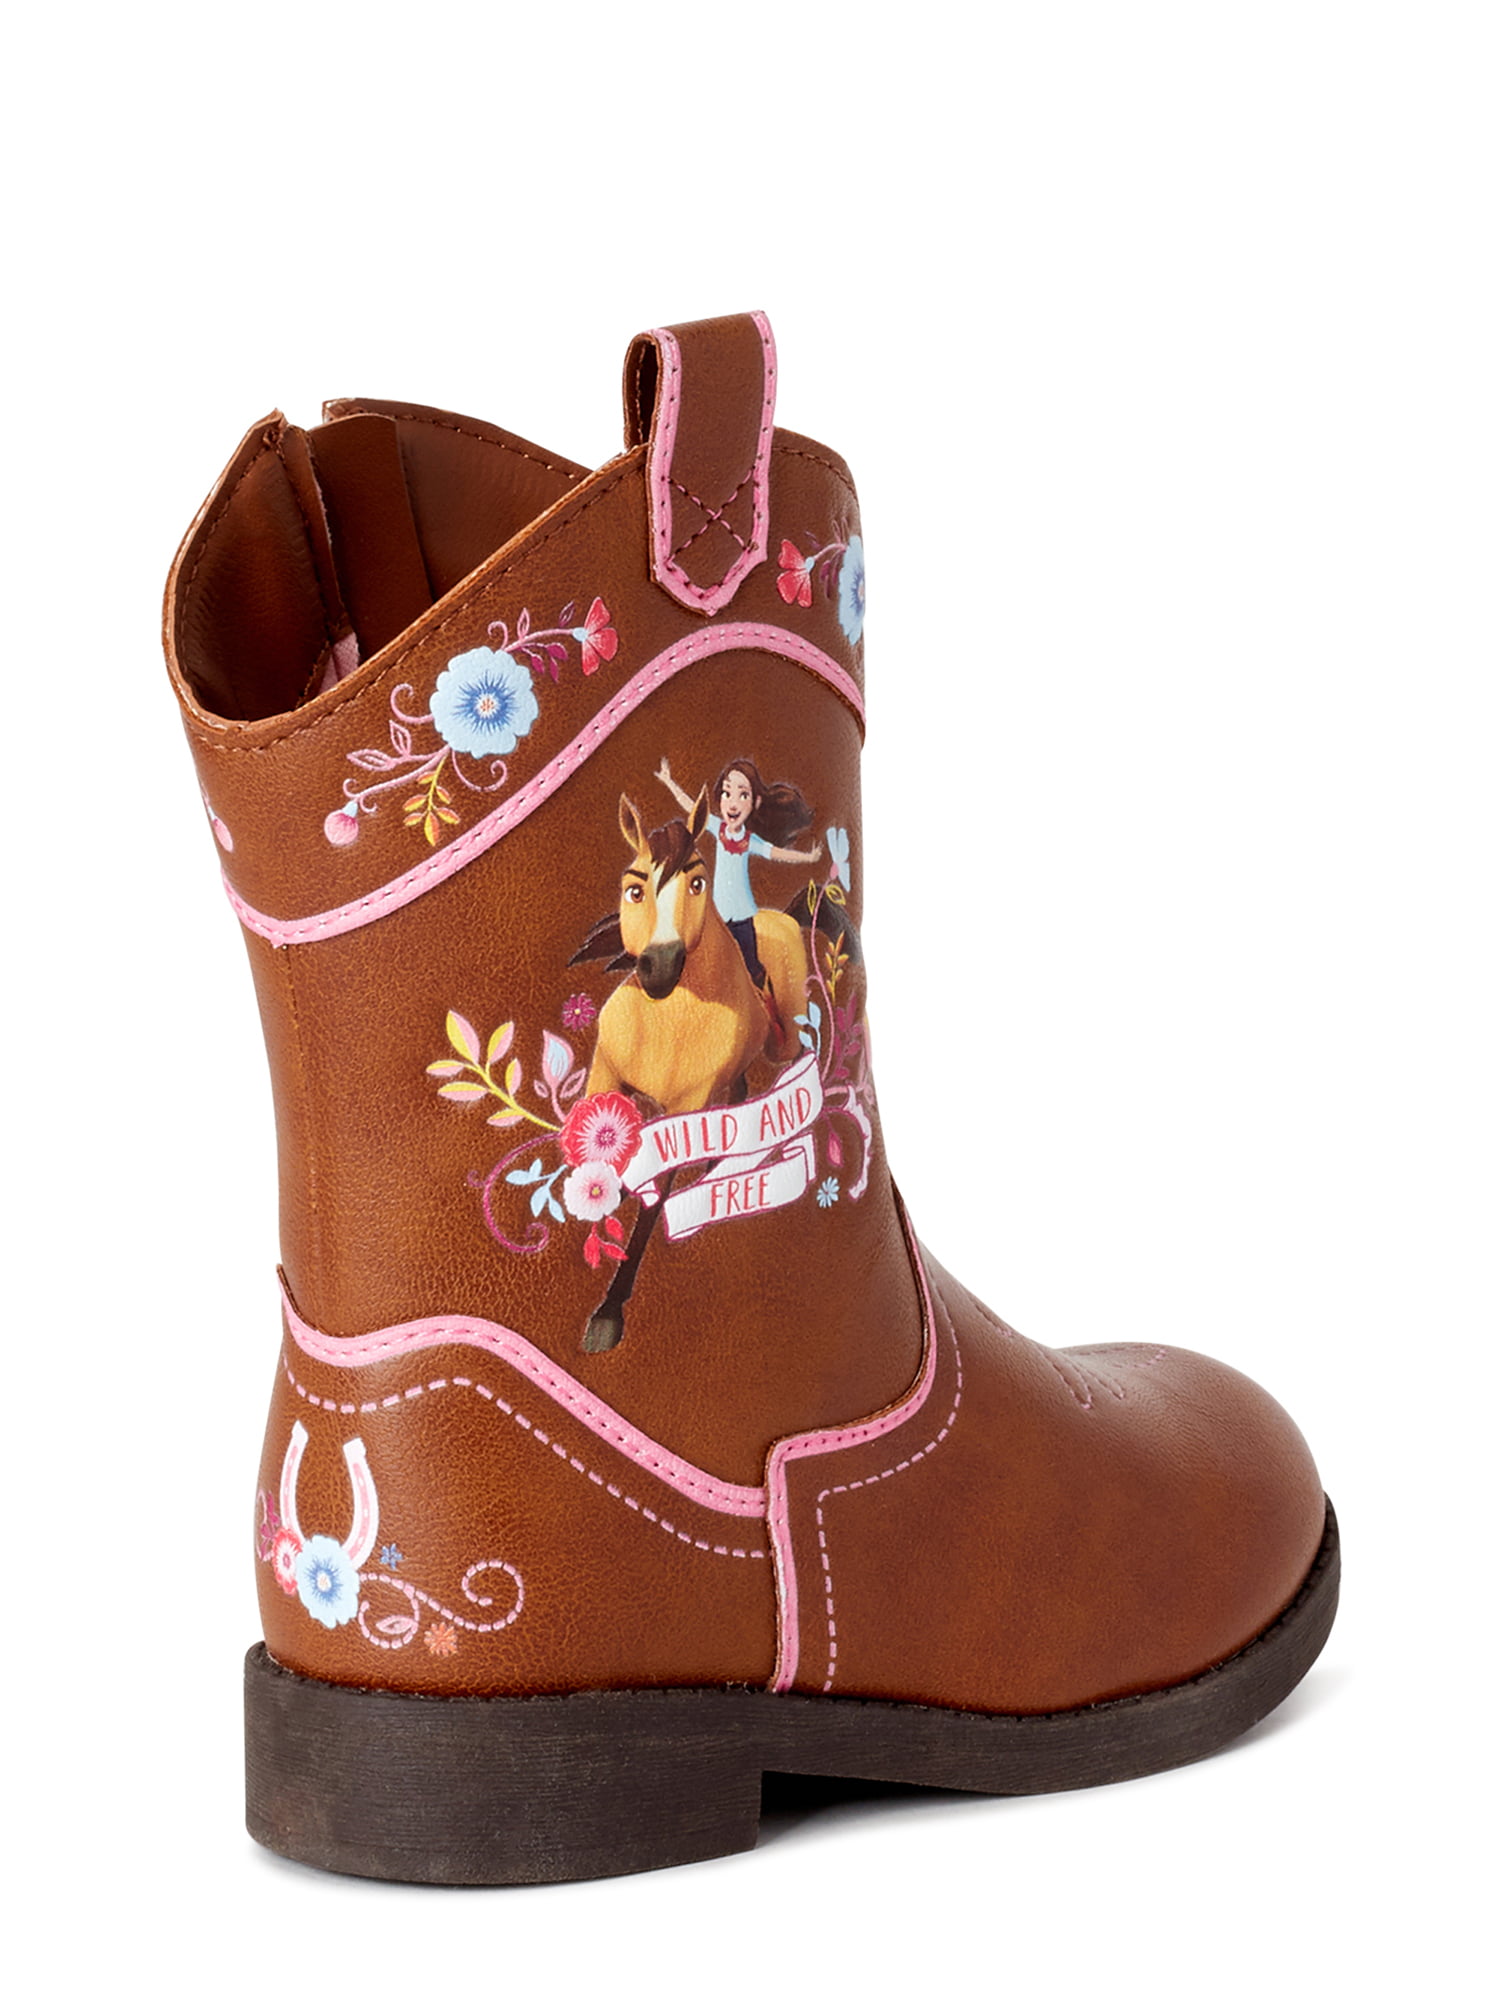 girls cowboy boots